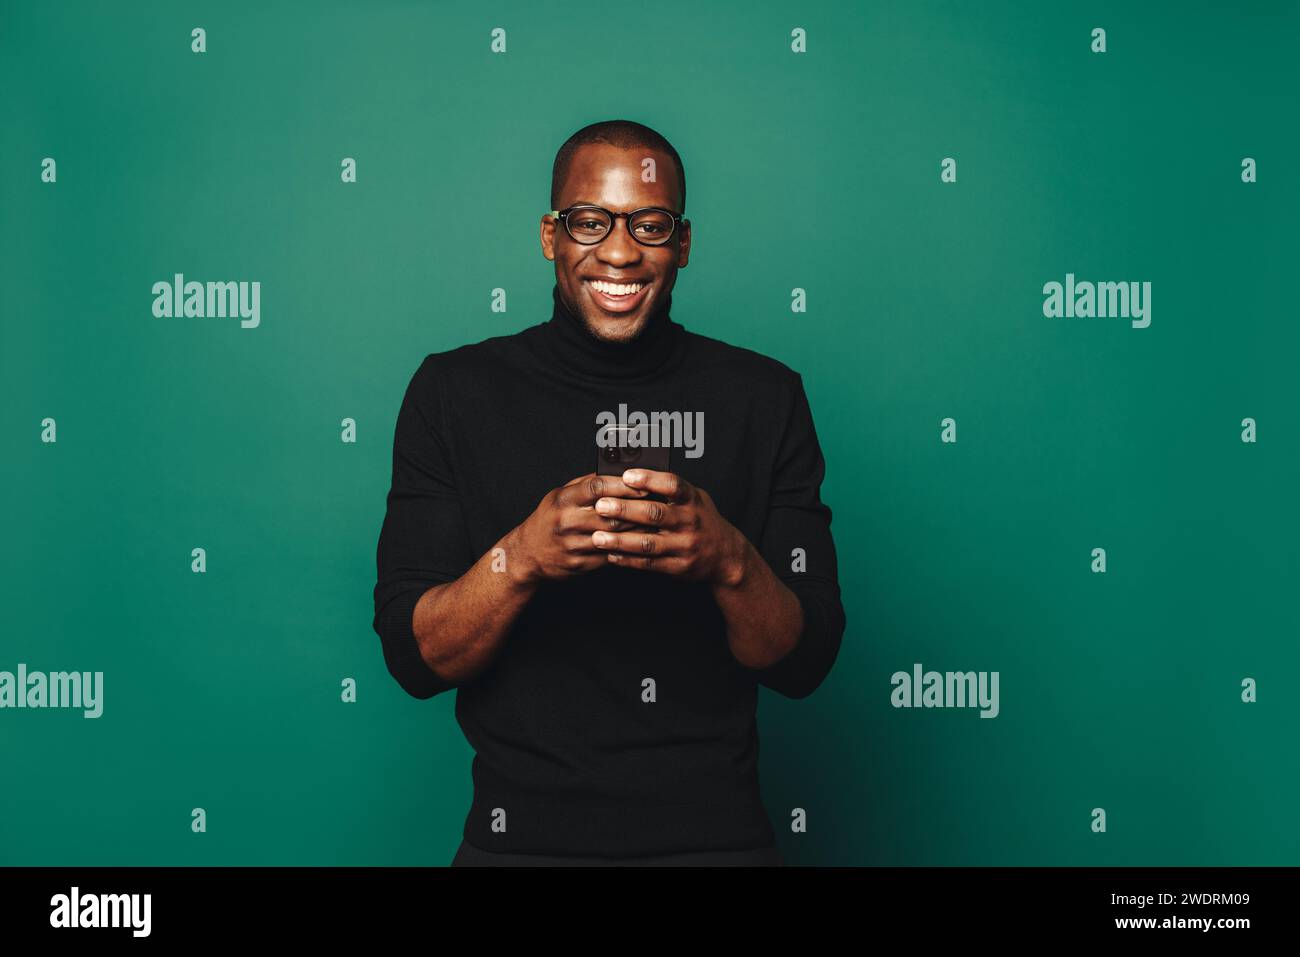 Portrait d'un jeune homme souriant en vêtements décontractés debout sur un fond vert, tenant un smartphone. Il reste connecté et social avec cela Banque D'Images